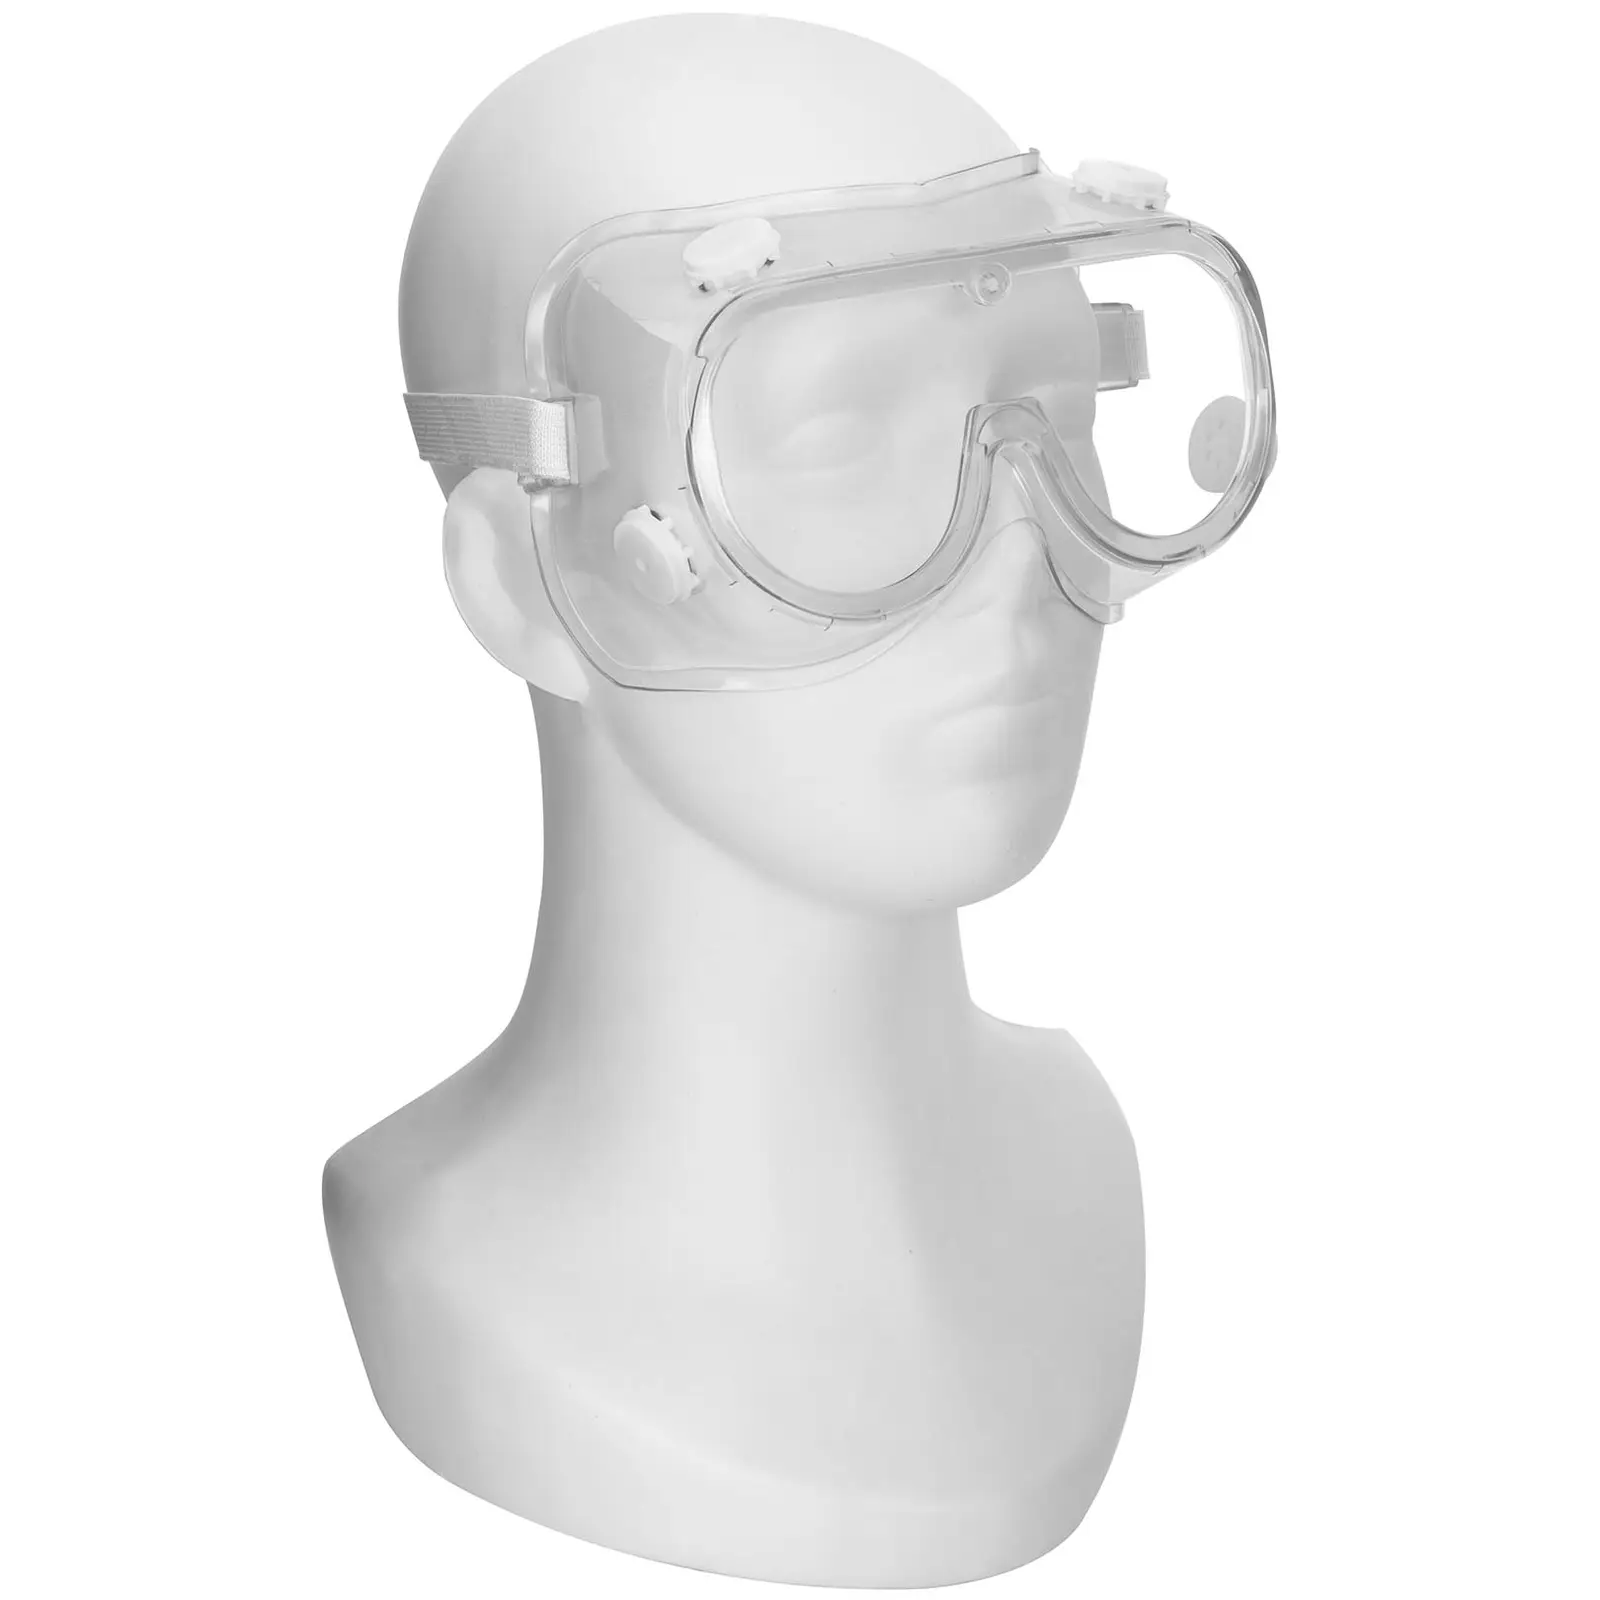 Beskyttelsesbriller - 3 stk. - klart glas - universalstørrelse